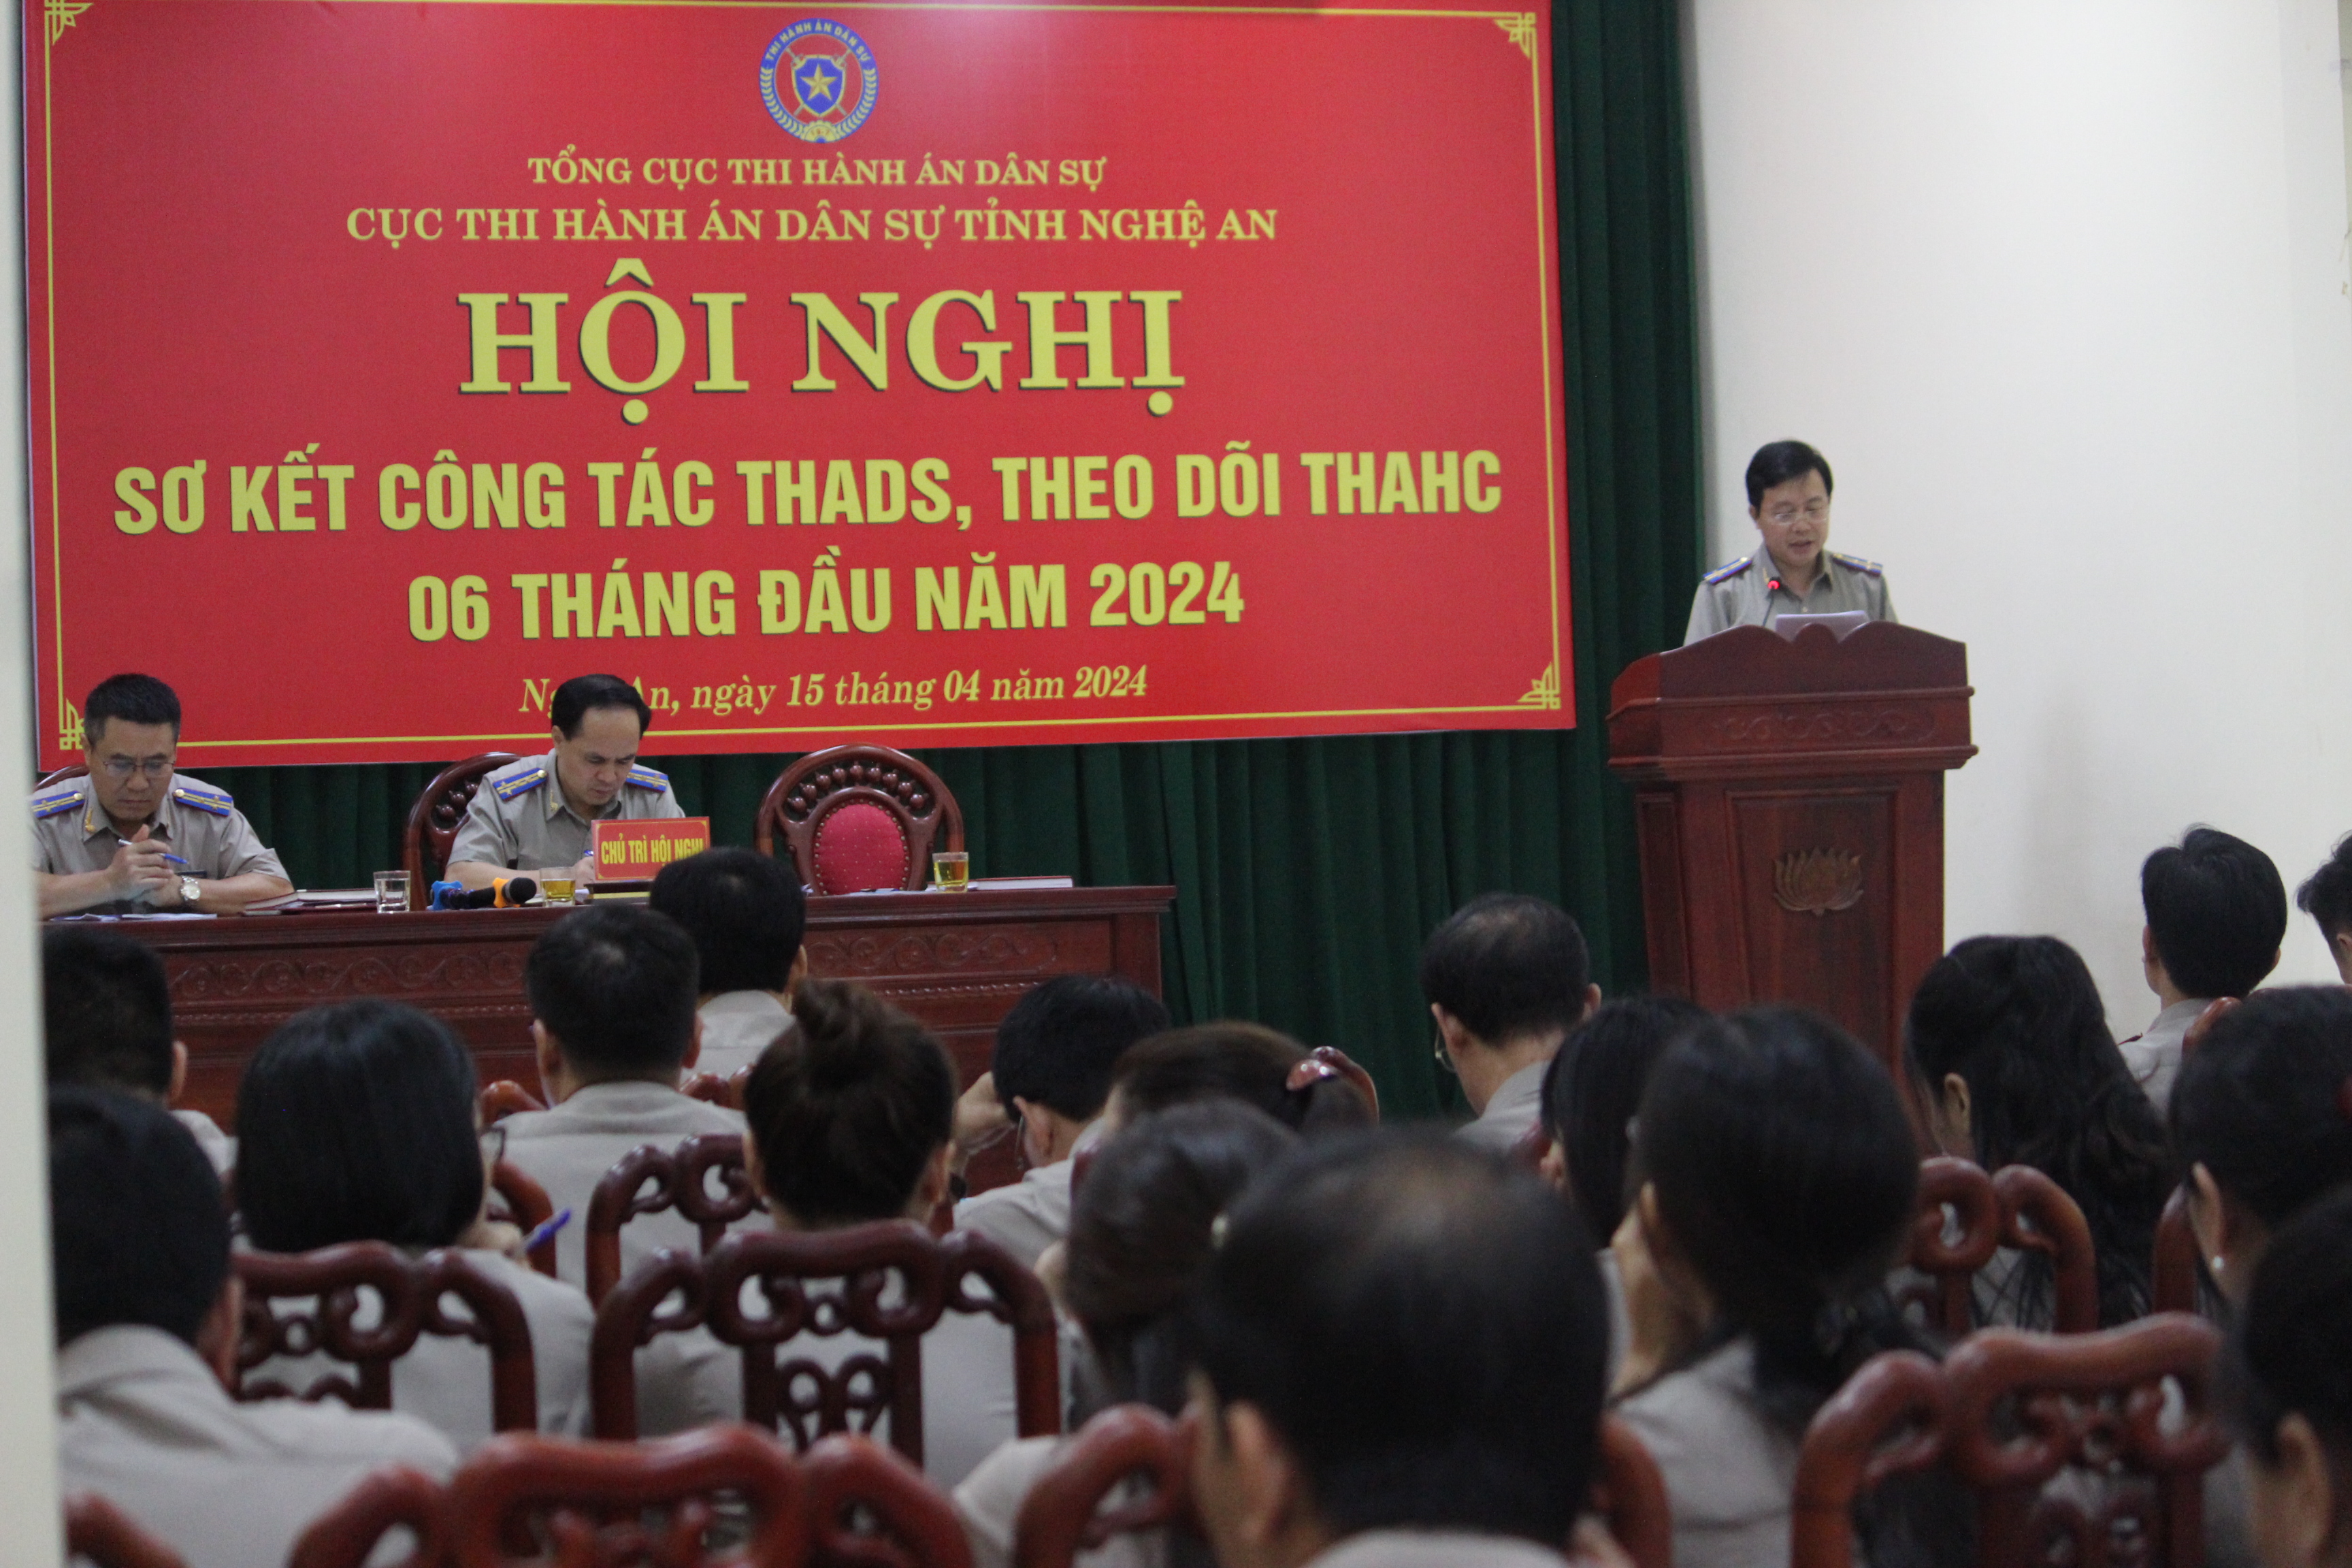 Thực hiện nhiều giải pháp để đạt chỉ tiêu công tác Thi hành án dân sự  6 tháng đầu năm 2024 trên địa bàn tỉnh Nghệ An